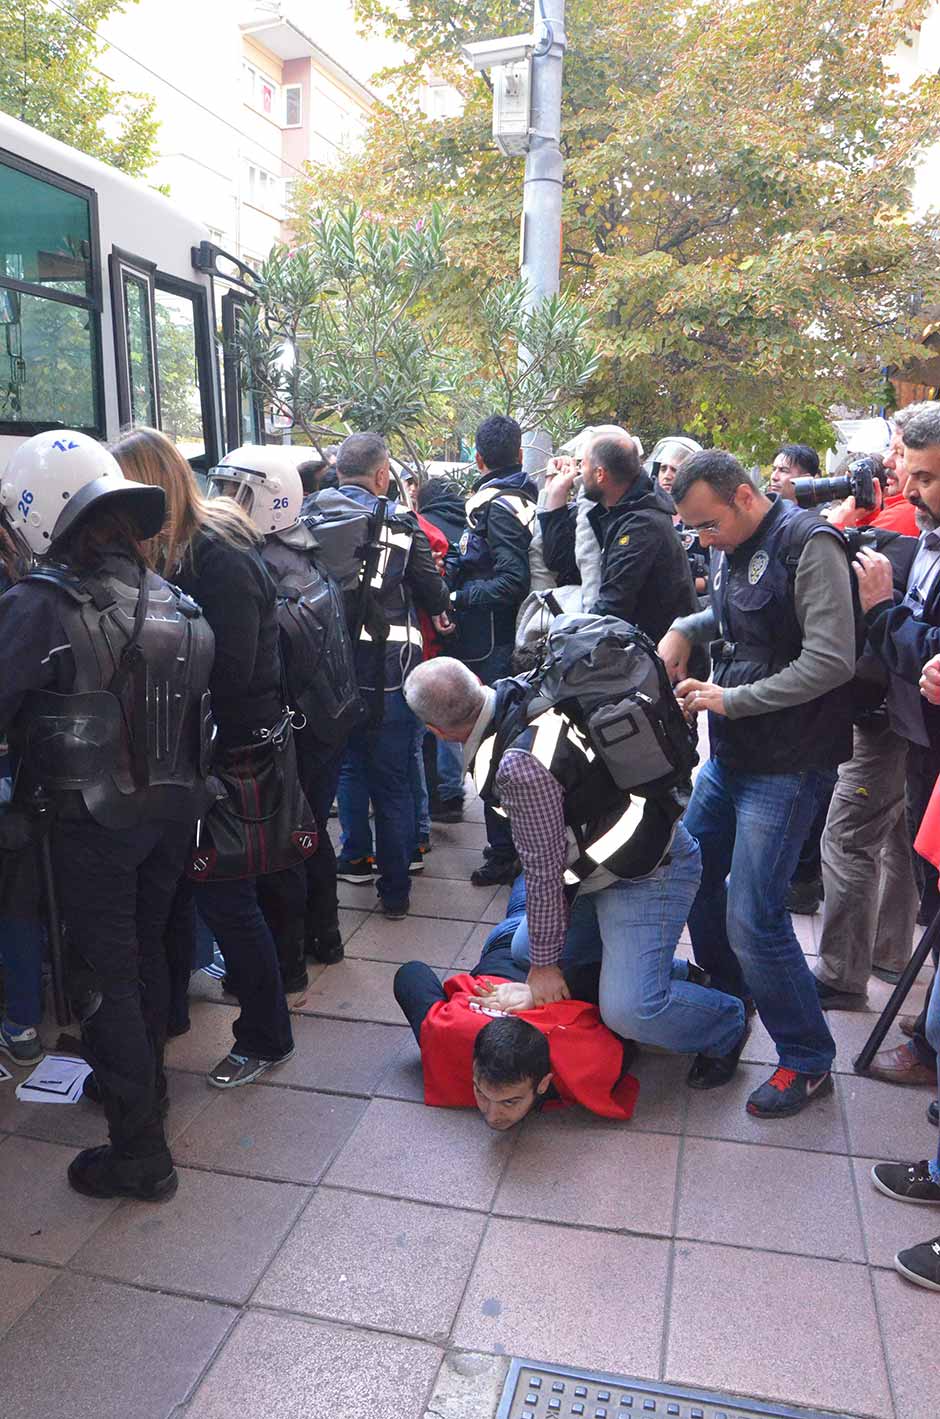 Eskişehir'de izinsiz bildiri dağıttıkları gerekçesiyle 25 kişi gözaltına alındı.